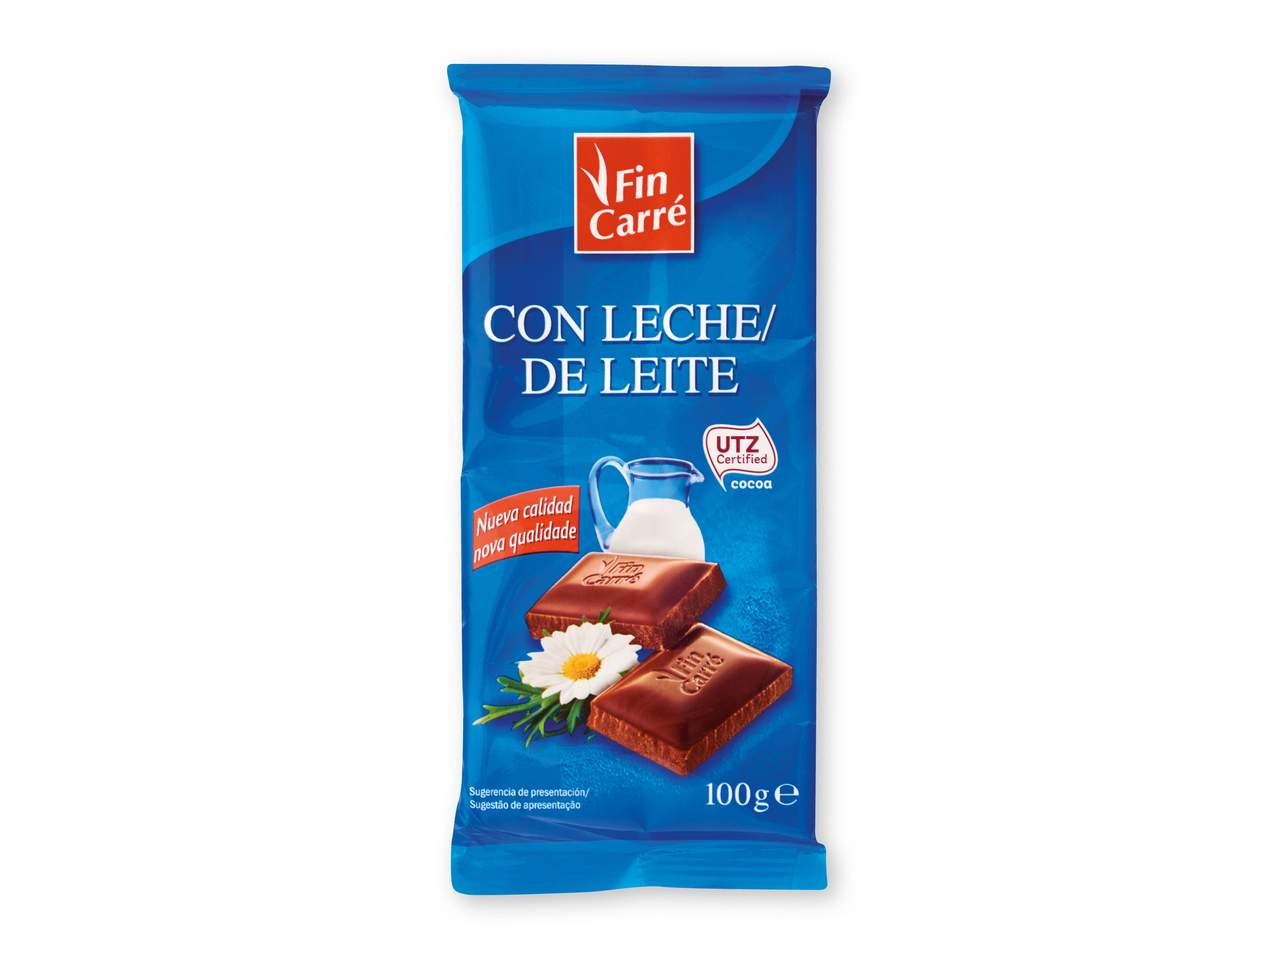 "Fin carré" Chocolate con leche